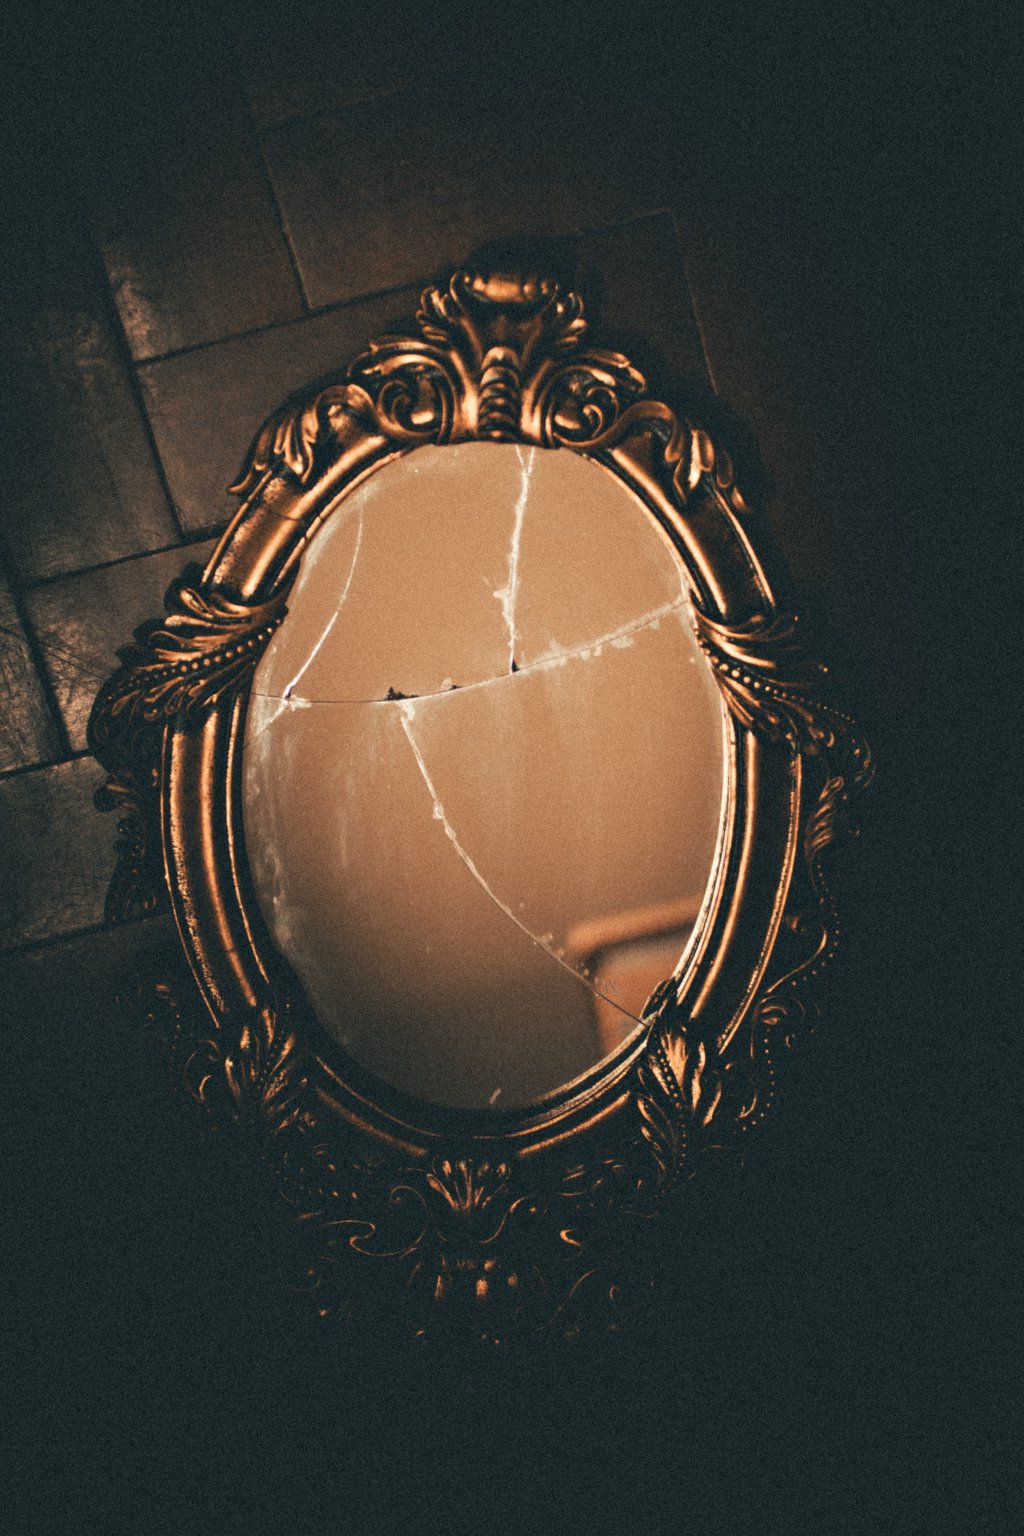 objetos que dão azar - espelho quebrado